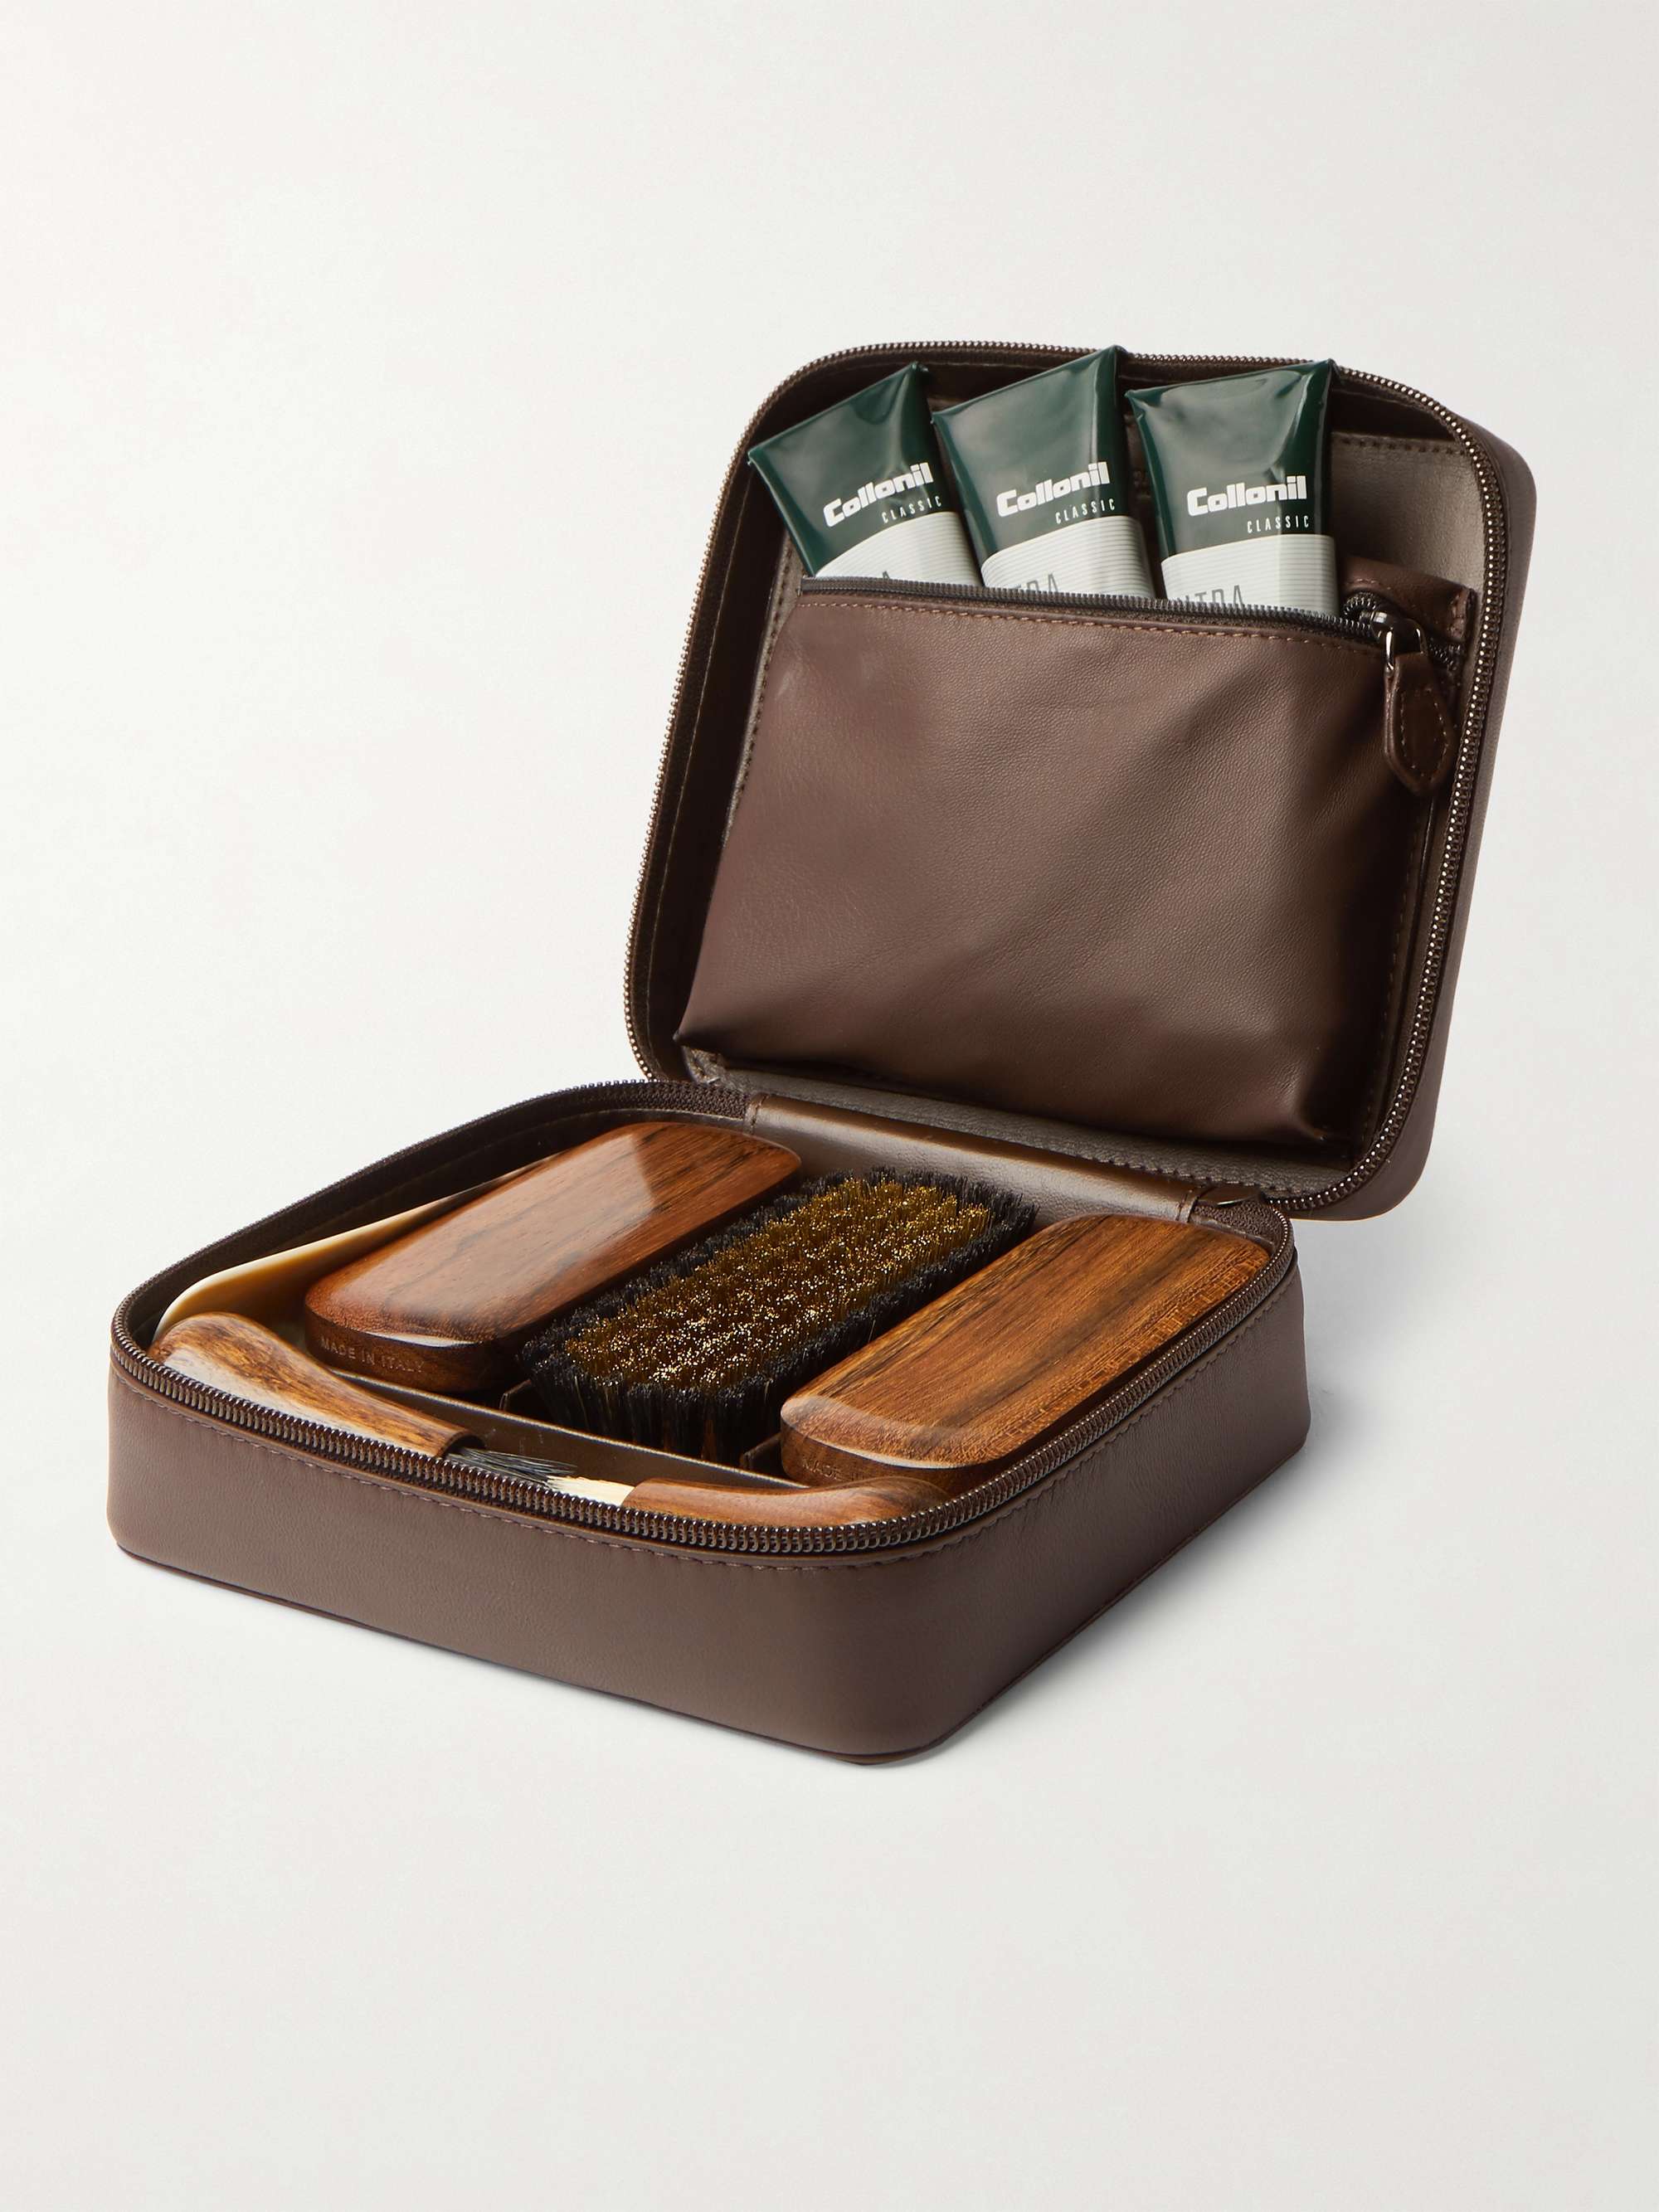 LORENZI MILANO Travel Shoe Care Set with Leather Case